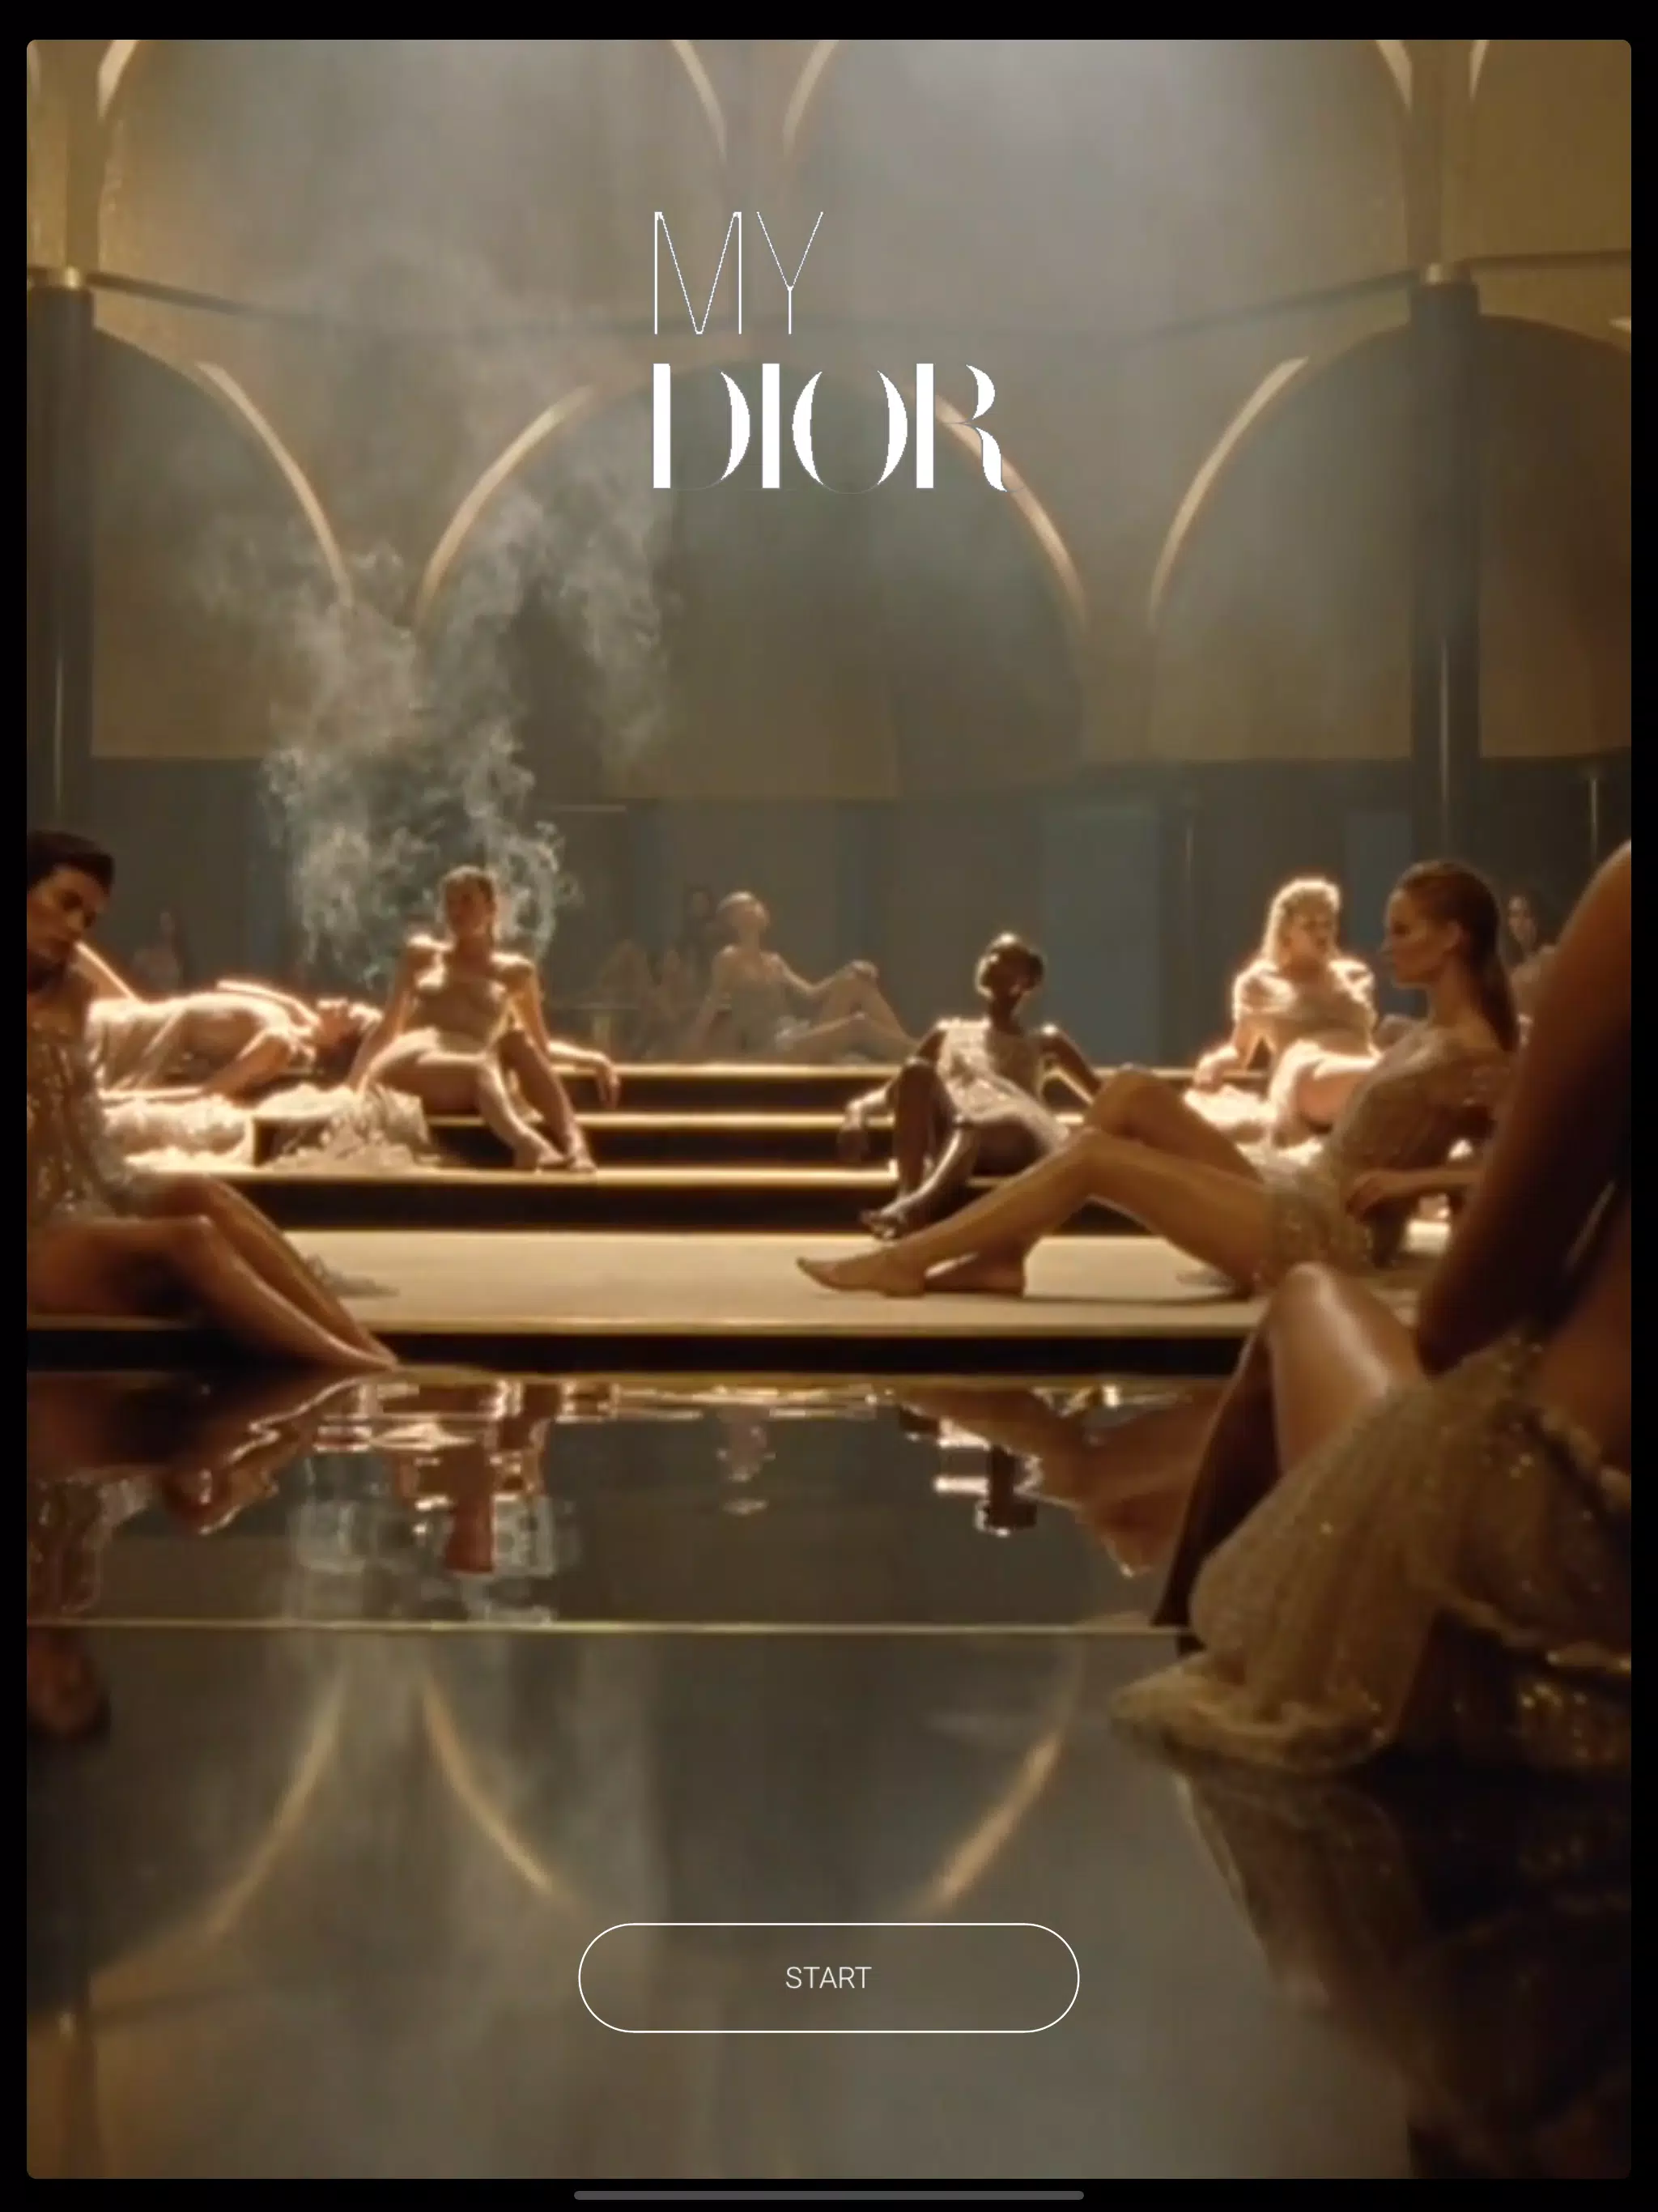 Cùng khám phá APK MY DIOR - một ứng dụng di động tuyệt vời từ thương hiệu Dior. Với tính năng đa dạng và thiết kế tinh tế, APK MY DIOR là điều bạn không thể bỏ qua. Hãy xem hình ảnh liên quan đến ứng dụng này để hiểu rõ hơn về nó.